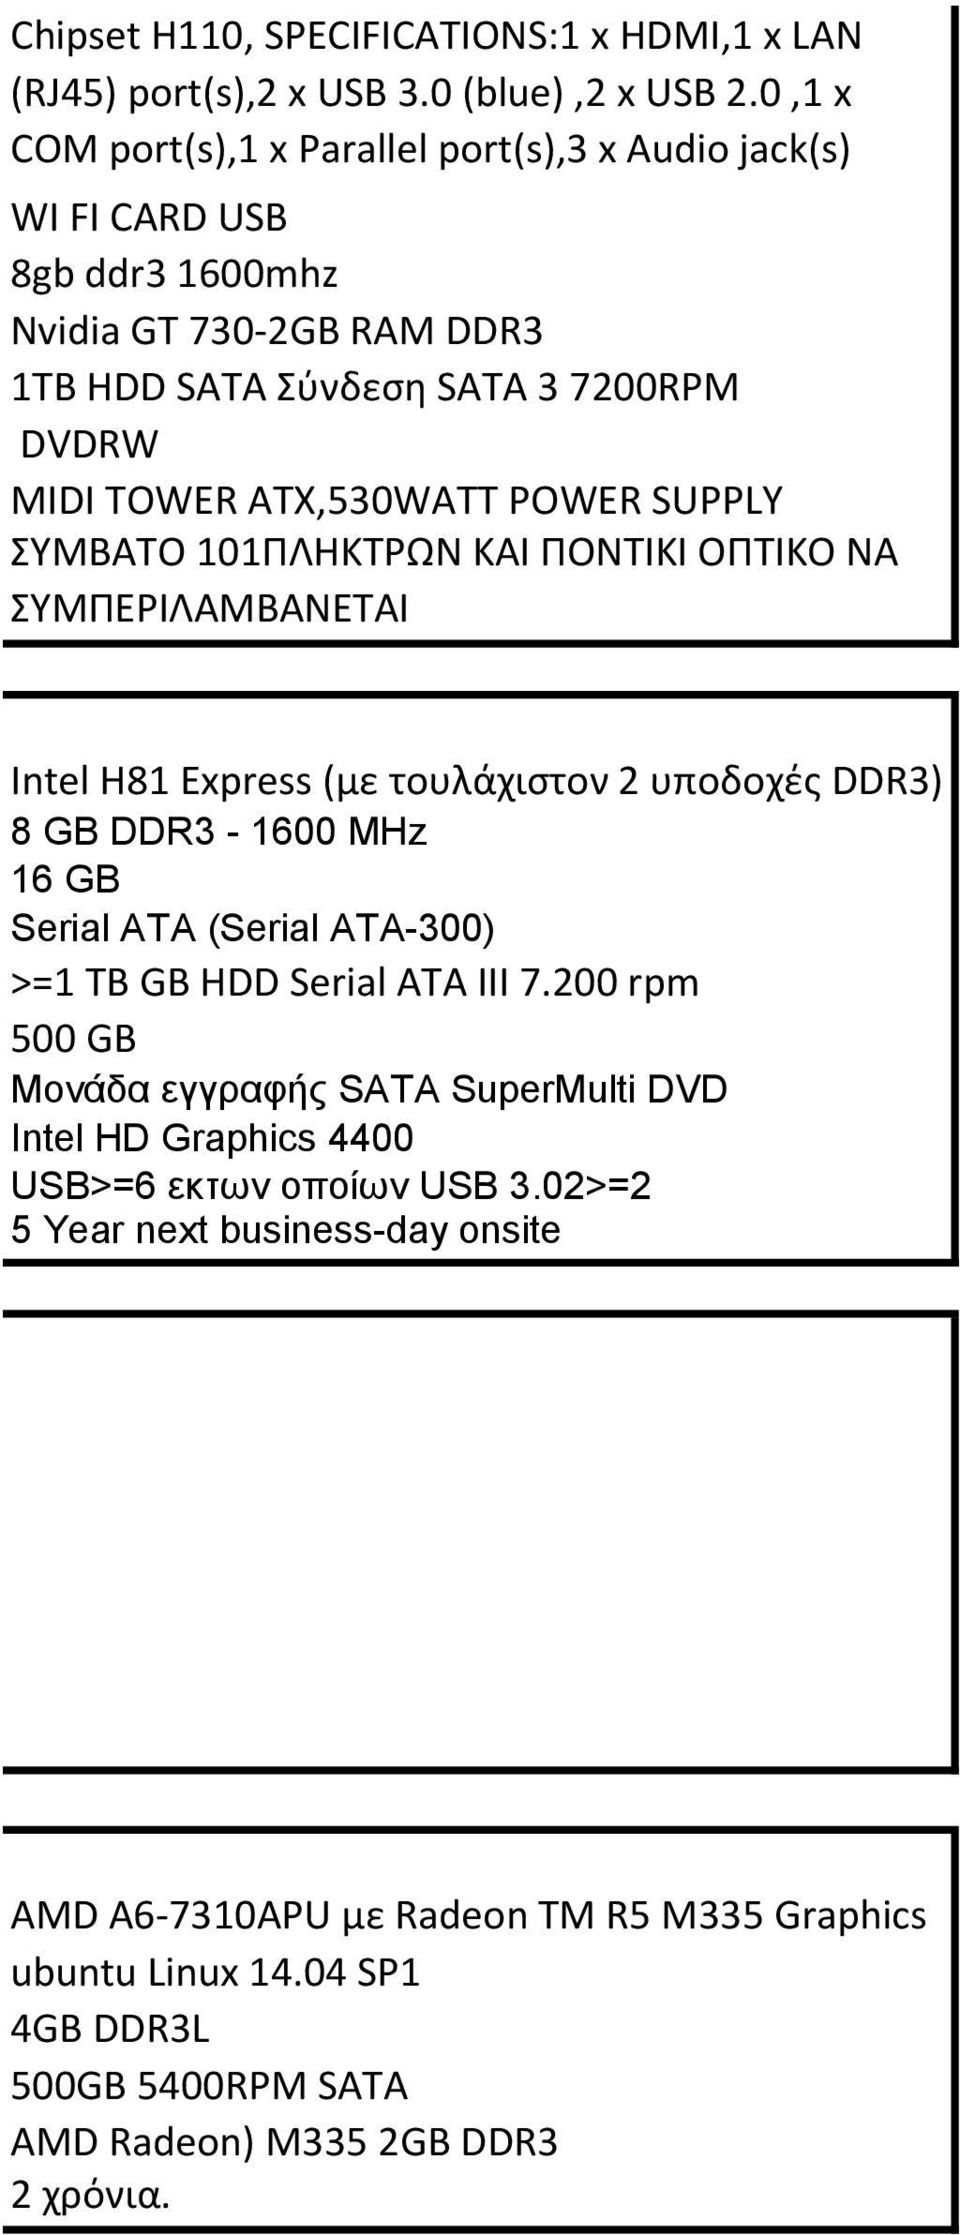 SUPPLY ΣΥΜΒΑΤΟ 101ΠΛΗΚΤΡΩΝ ΚΑΙ ΠΟΝΤΙΚΙ ΟΠΤΙΚΟ ΝΑ ΣΥΜΠΕΡΙΛΑΜΒΑΝΕΤΑΙ Intel H81 Express (με τουλάχιστον 2 υποδοχές DDR3) 8 GB DDR3-1600 MHz 16 GB Serial ATA (Serial ATA-300) >=1 ΤΒ GB HDD